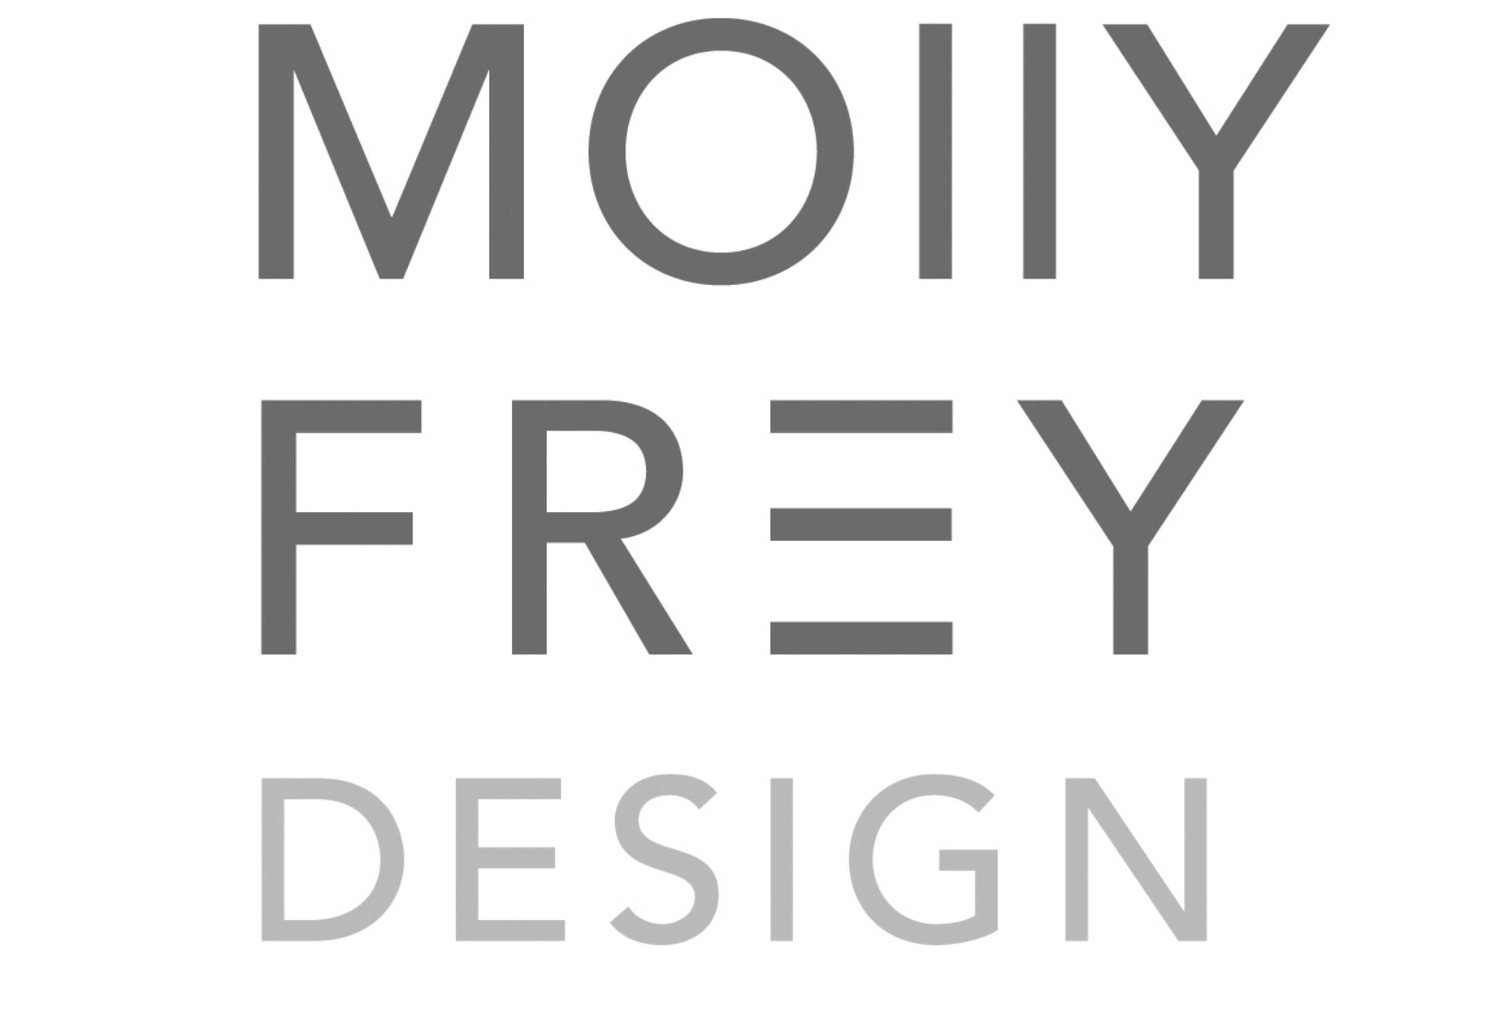 MOLLY FREY DESIGN